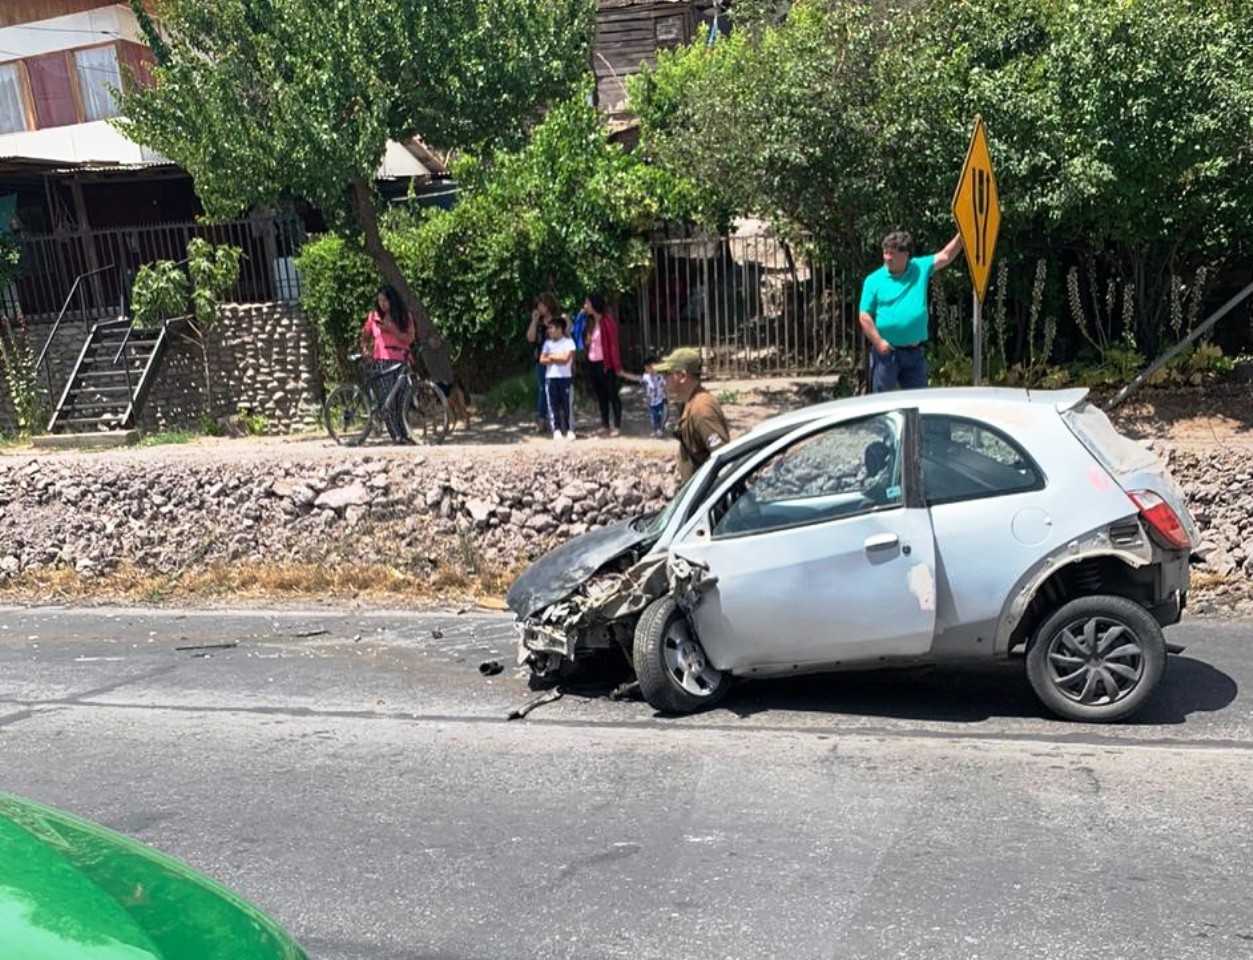 PUTAENDO: Conductor ebrio provocó accidente, huyó del lugar dejando a su acompañante herida en el vehículo